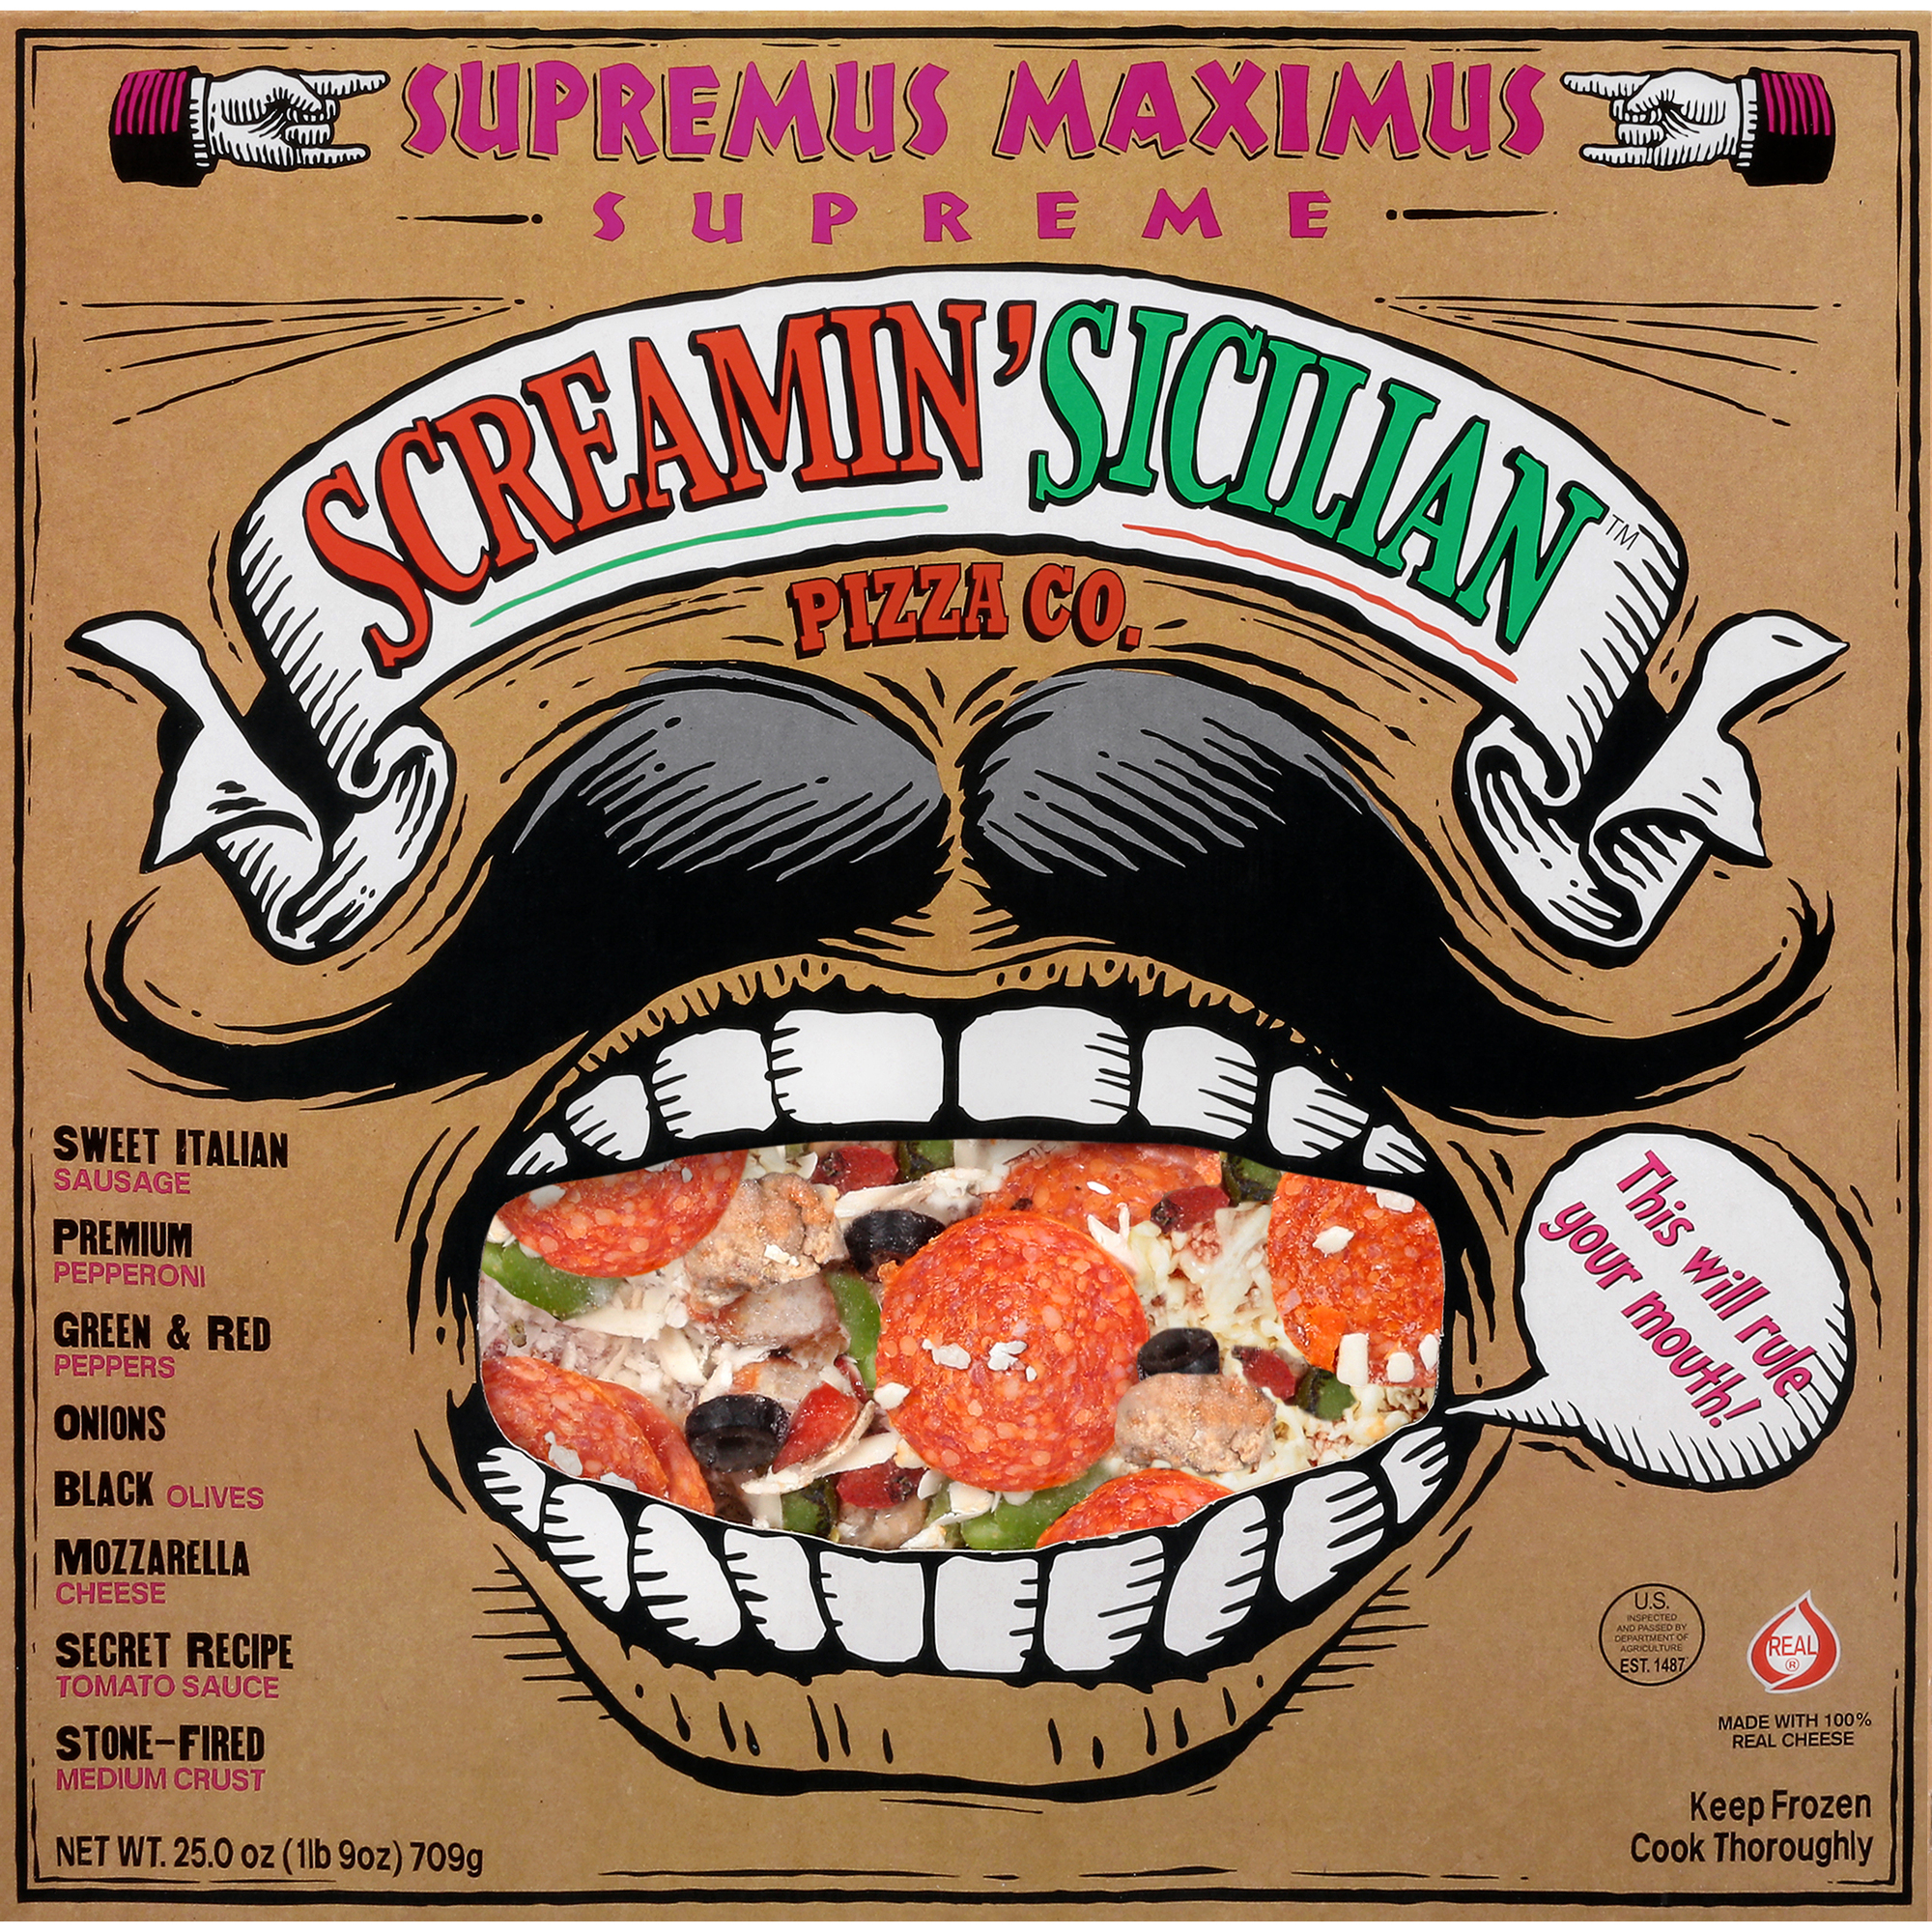 Screamin' Sicilian Supremus Maximus (Supreme) Pizza 12 units per case 25.0 oz